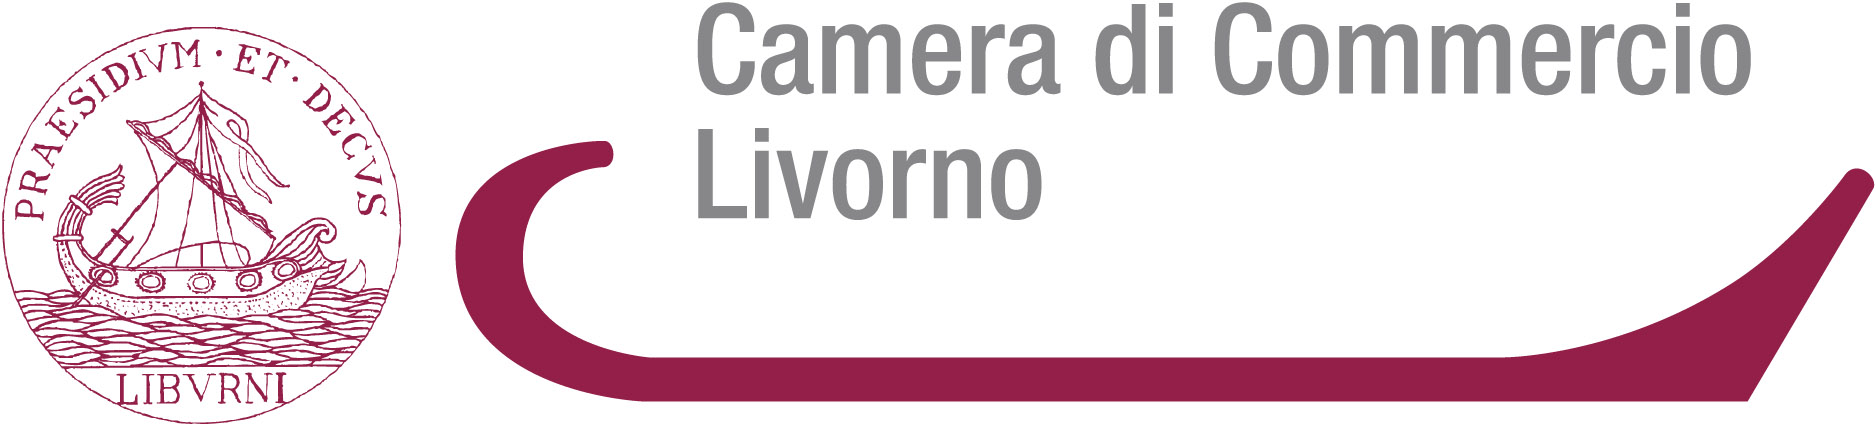 Camera di Commercio Livorno